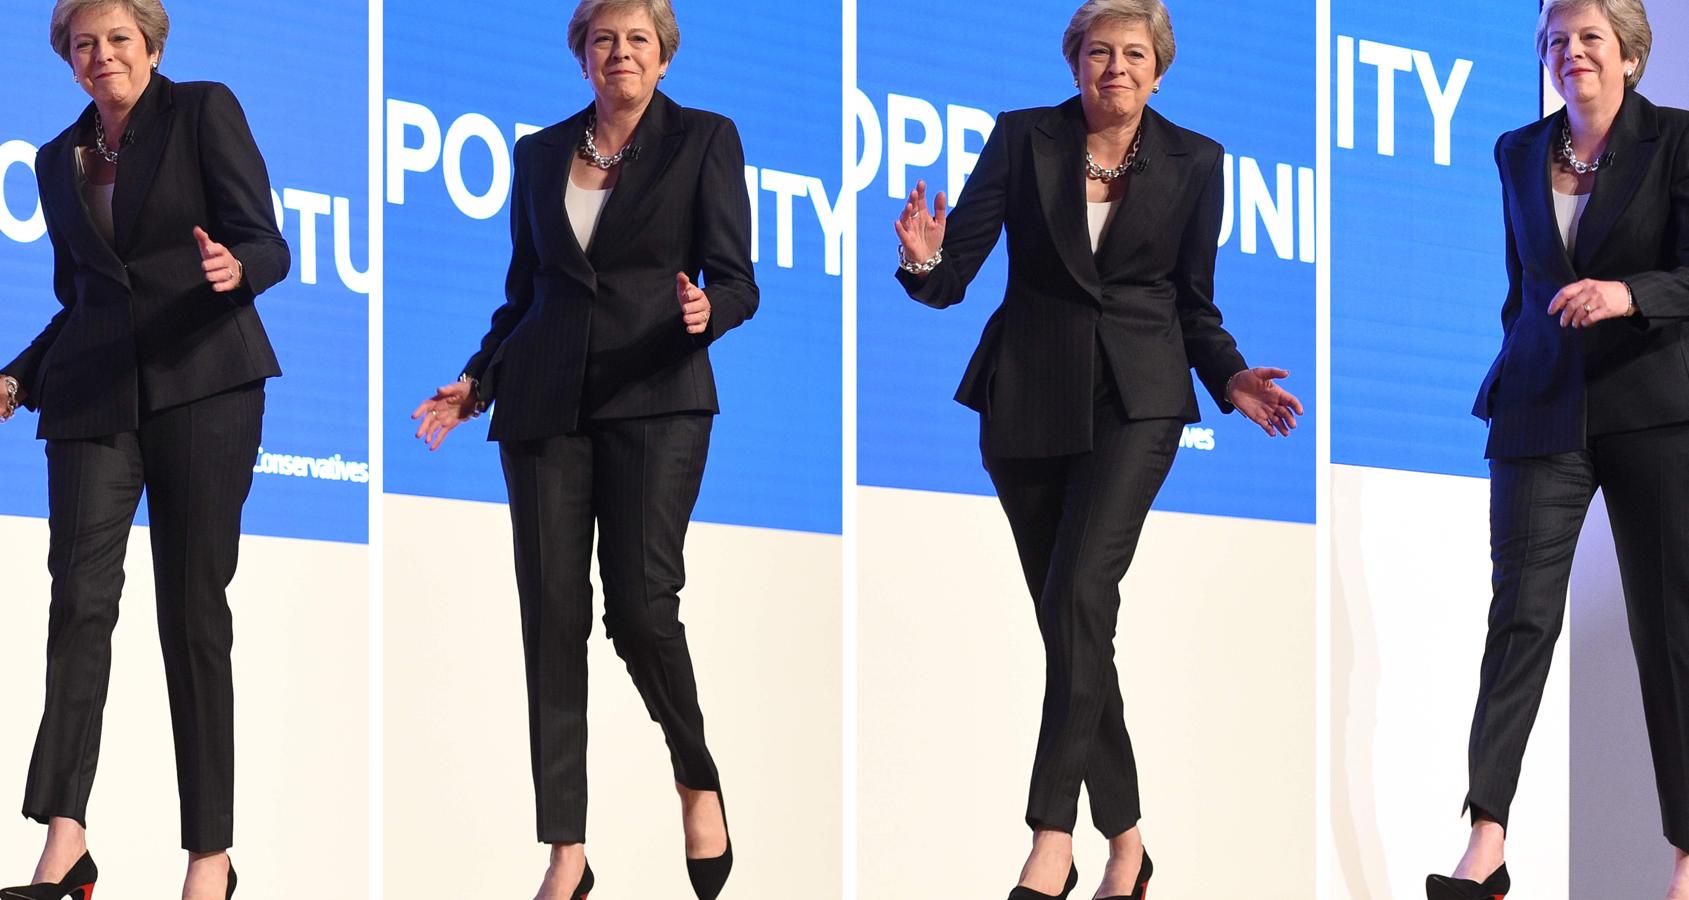 May bailando «dancing queen» en el último día de la conferencia de los «Tories» en Birmingham el 3 de octubre de 2018. 